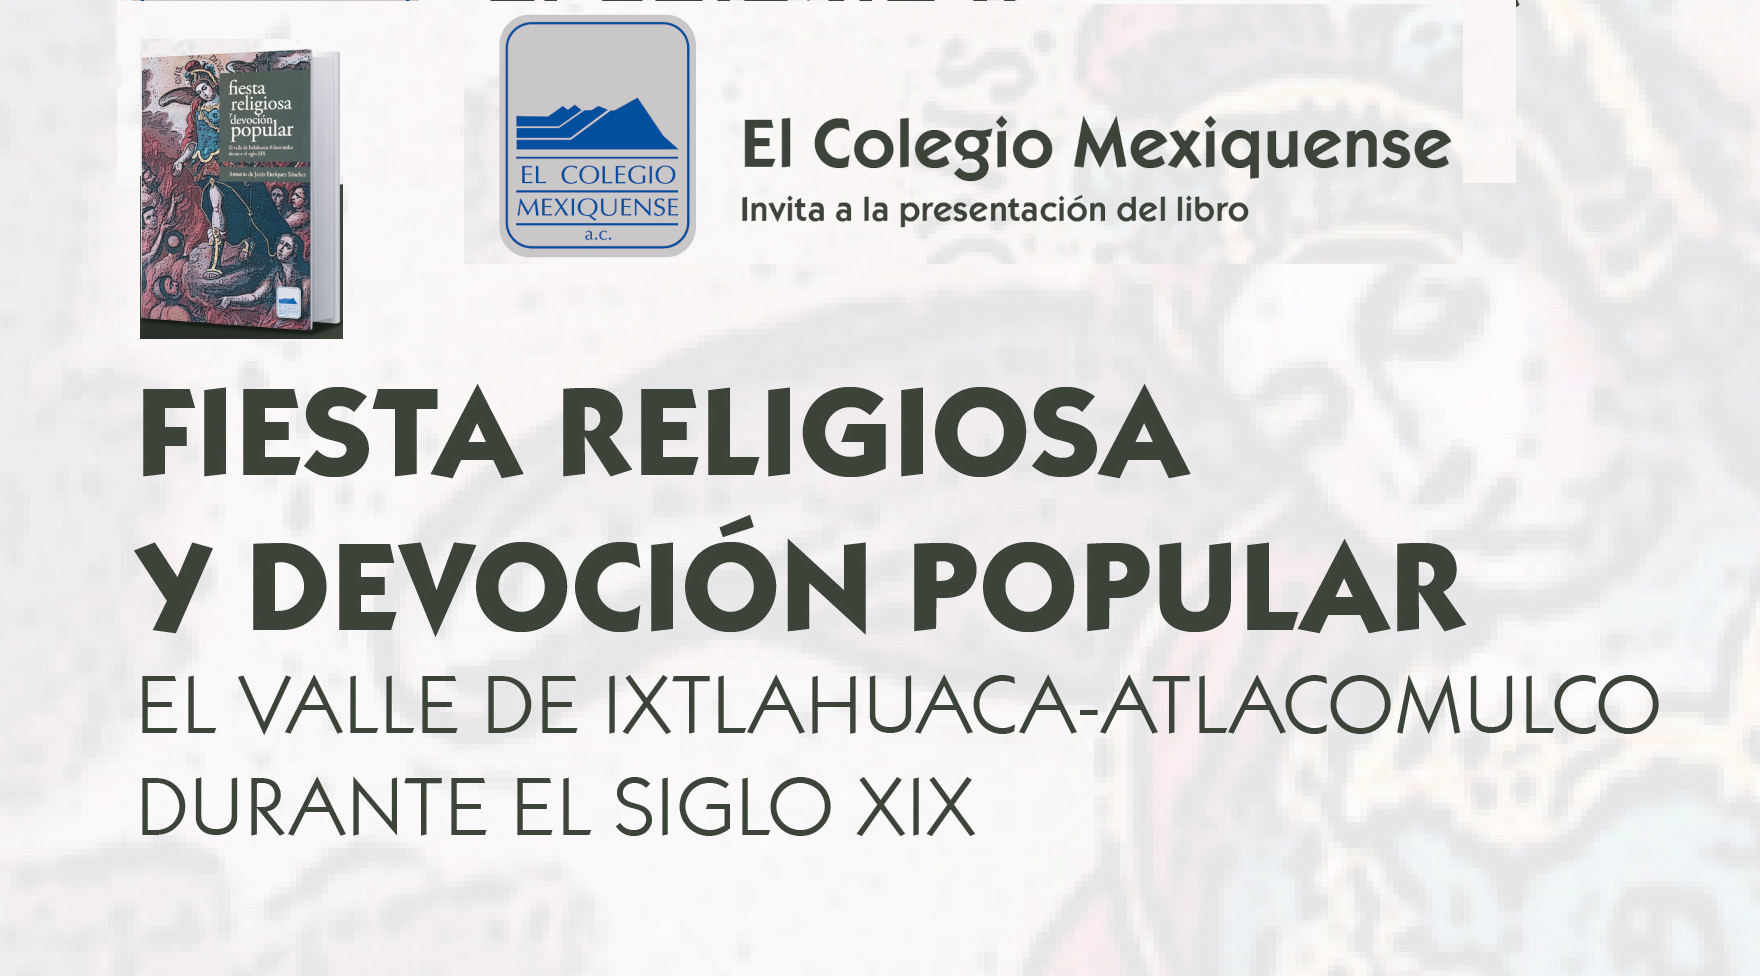 Presentación de Libro. Fiesta religiosa y devoción popular. El valle de Ixtlahuaca-Atlacomulco durante el Siglo XIX